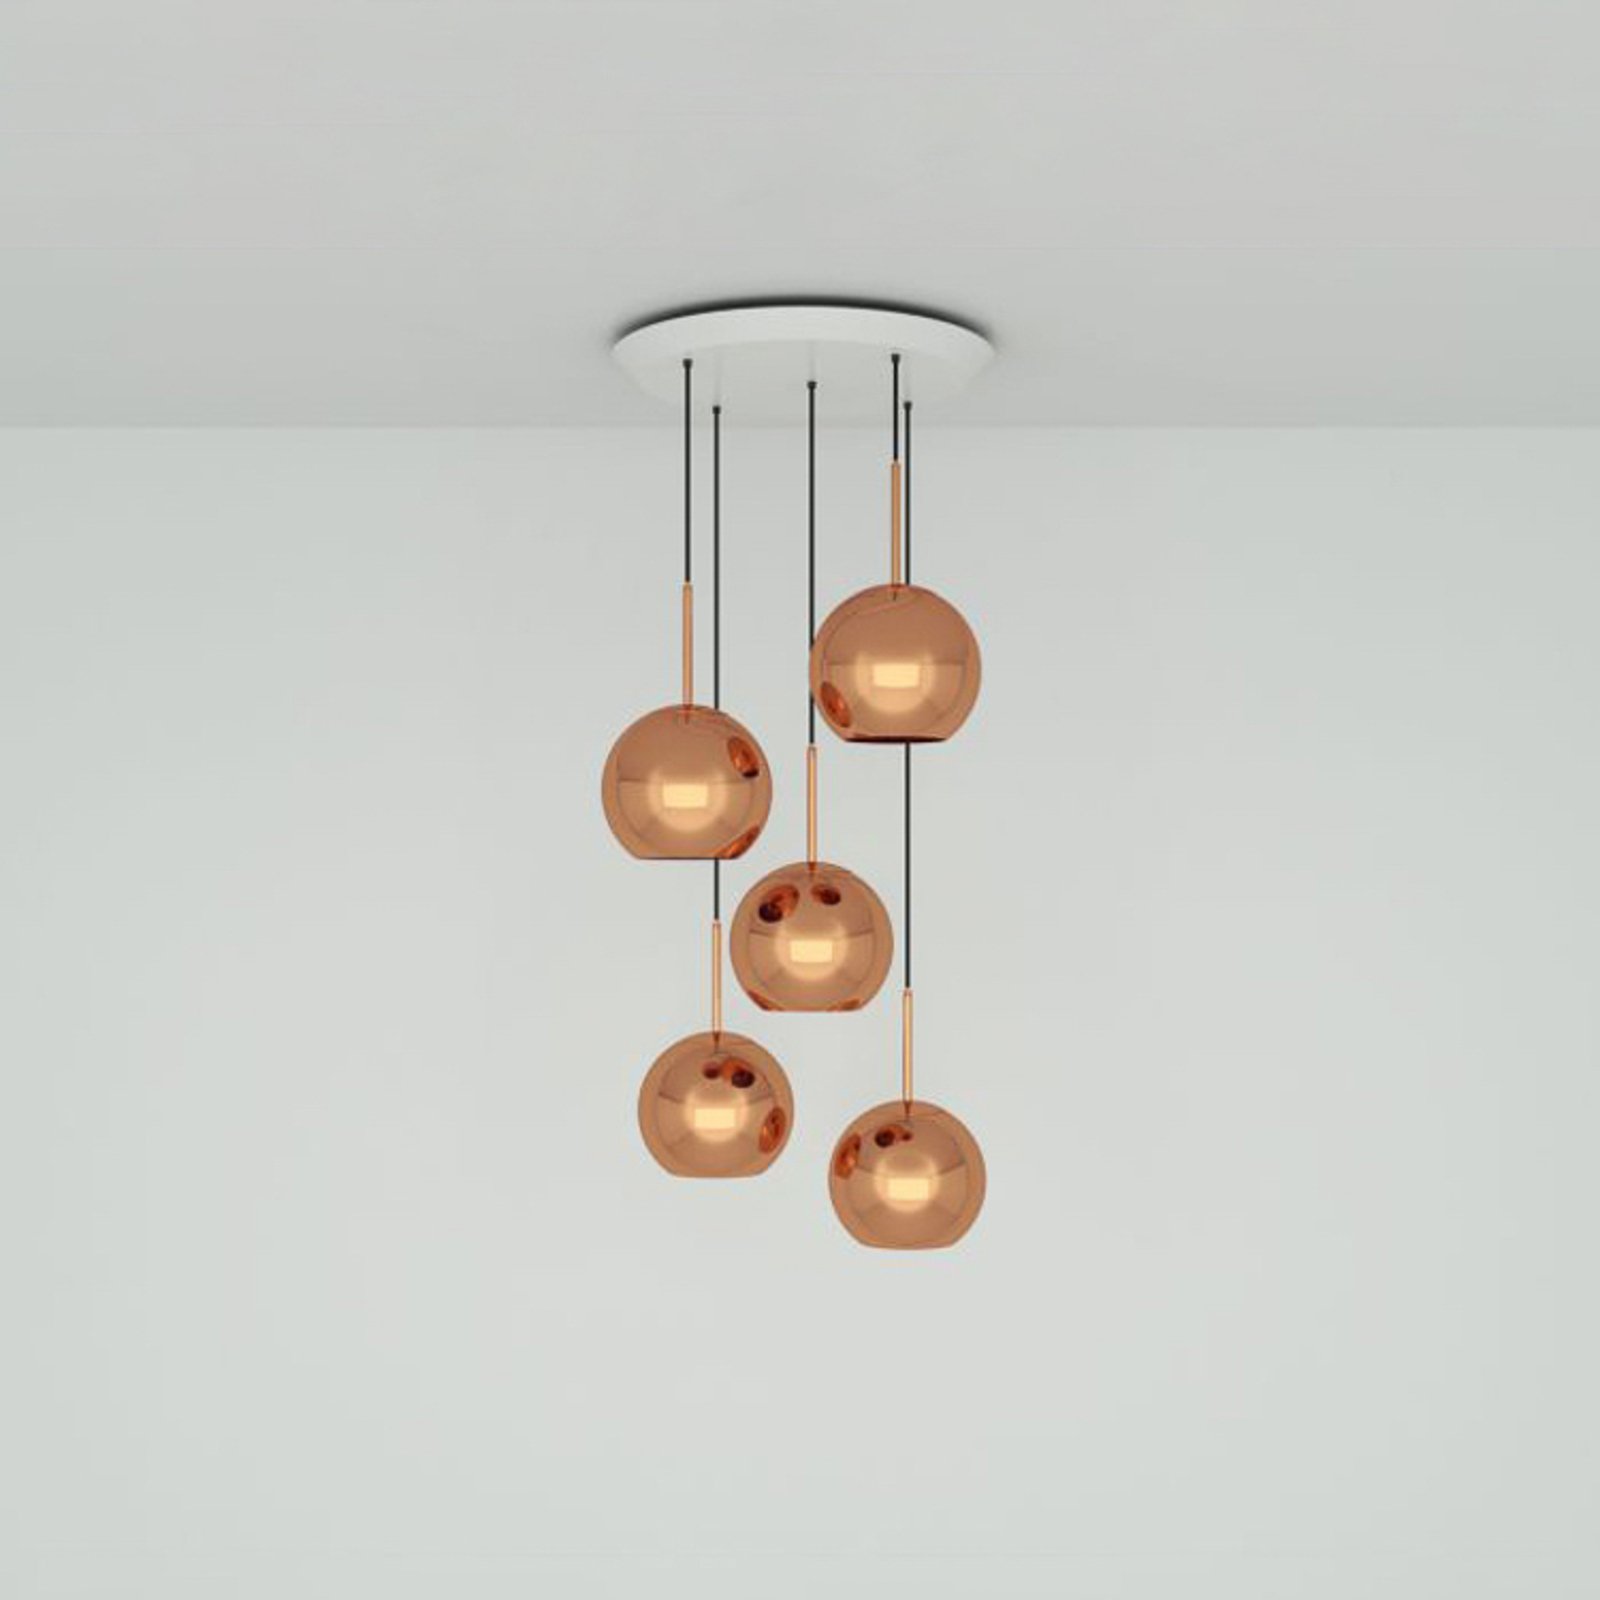 Tom Dixon Copper 25 cm Round hanging light, 5-bulb